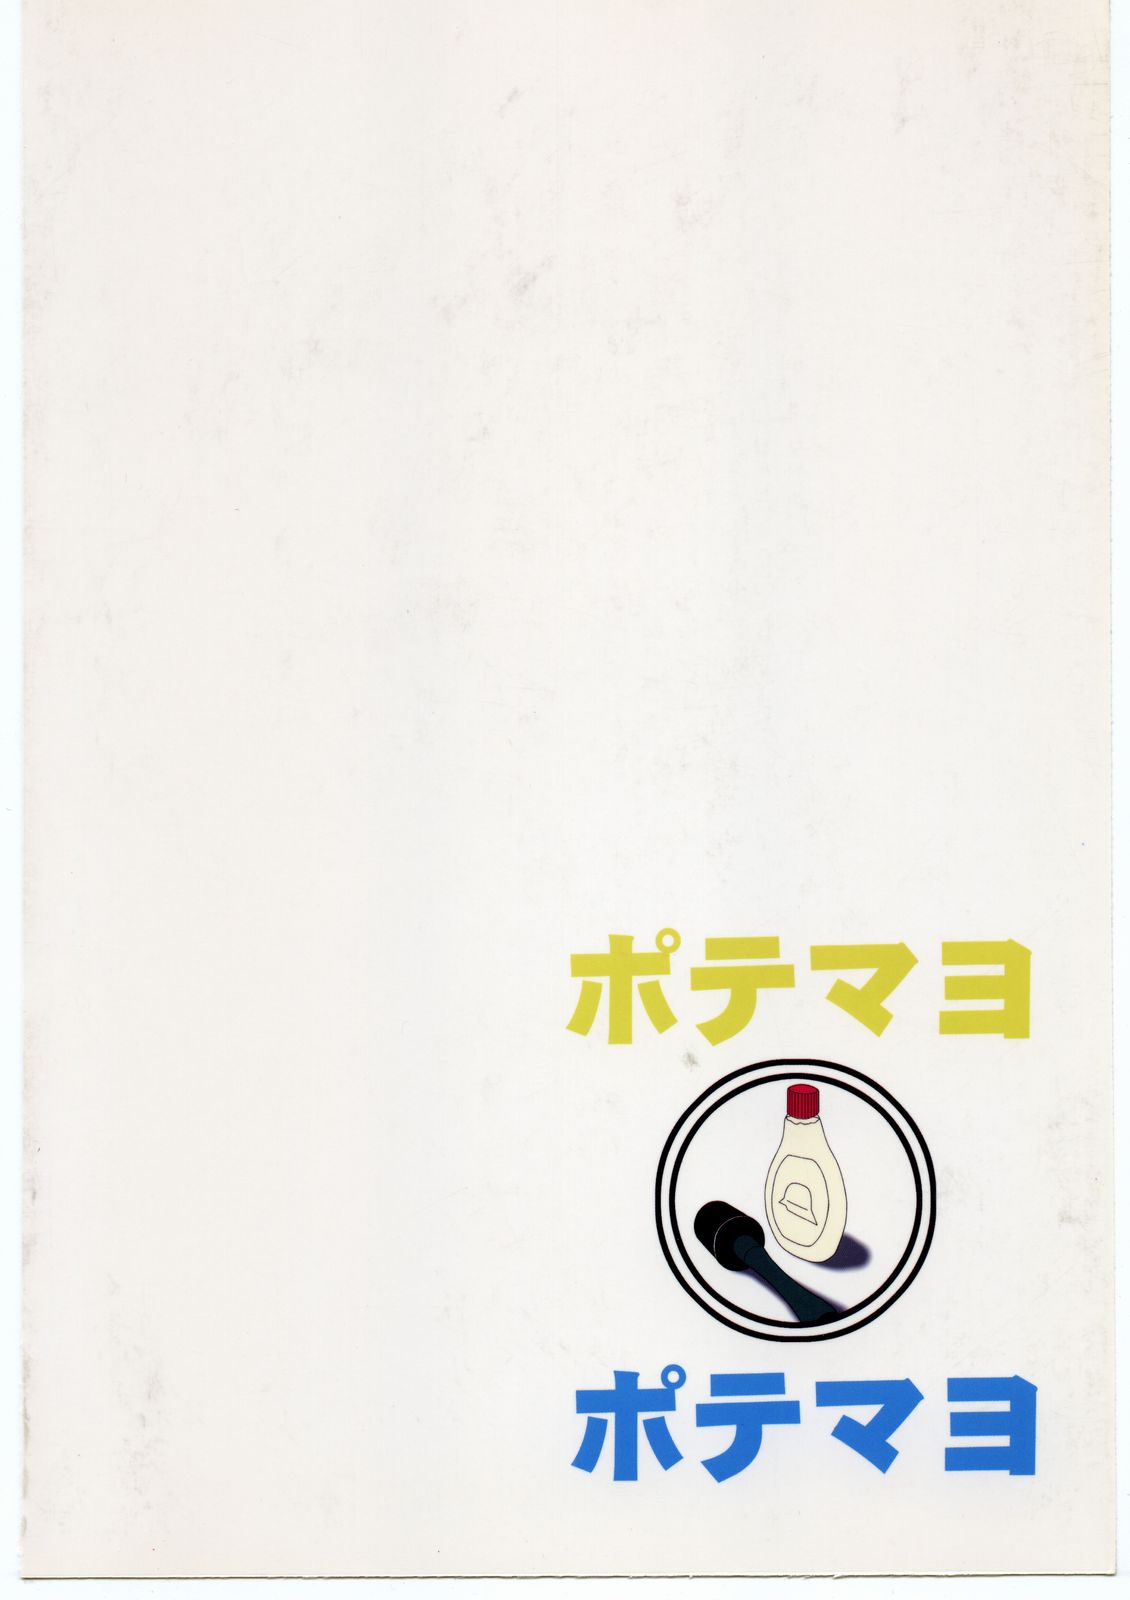 (C63) [めんげれくん (カラくりべえ、百合融、ZOL)] ポテマヨ vol.1 (名探偵コナン)